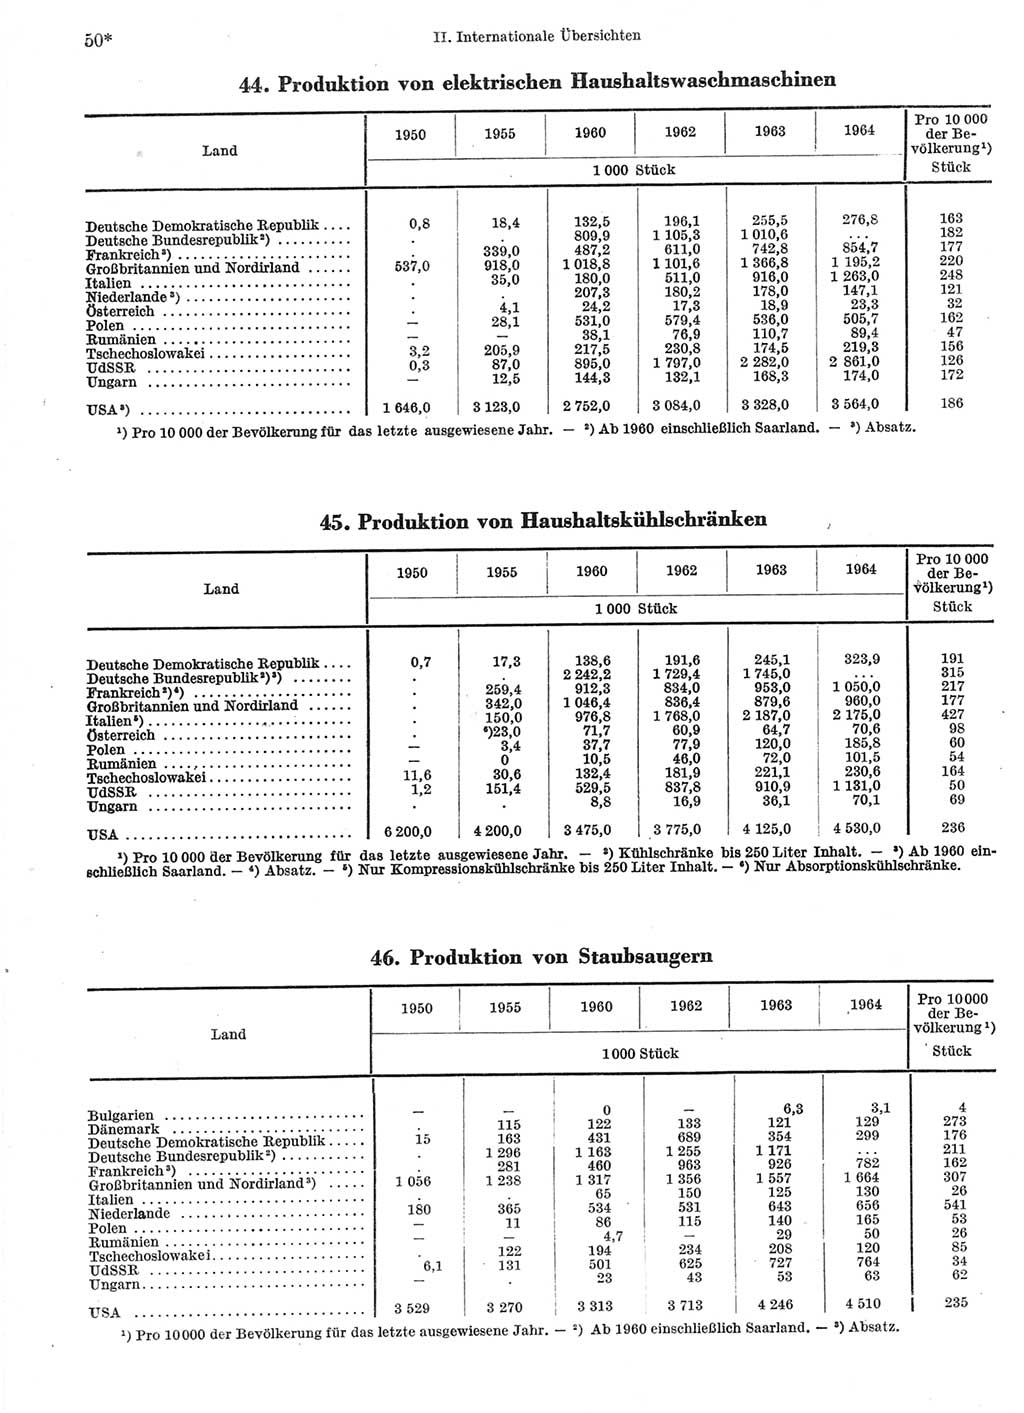 Statistisches Jahrbuch der Deutschen Demokratischen Republik (DDR) 1966, Seite 50 (Stat. Jb. DDR 1966, S. 50)